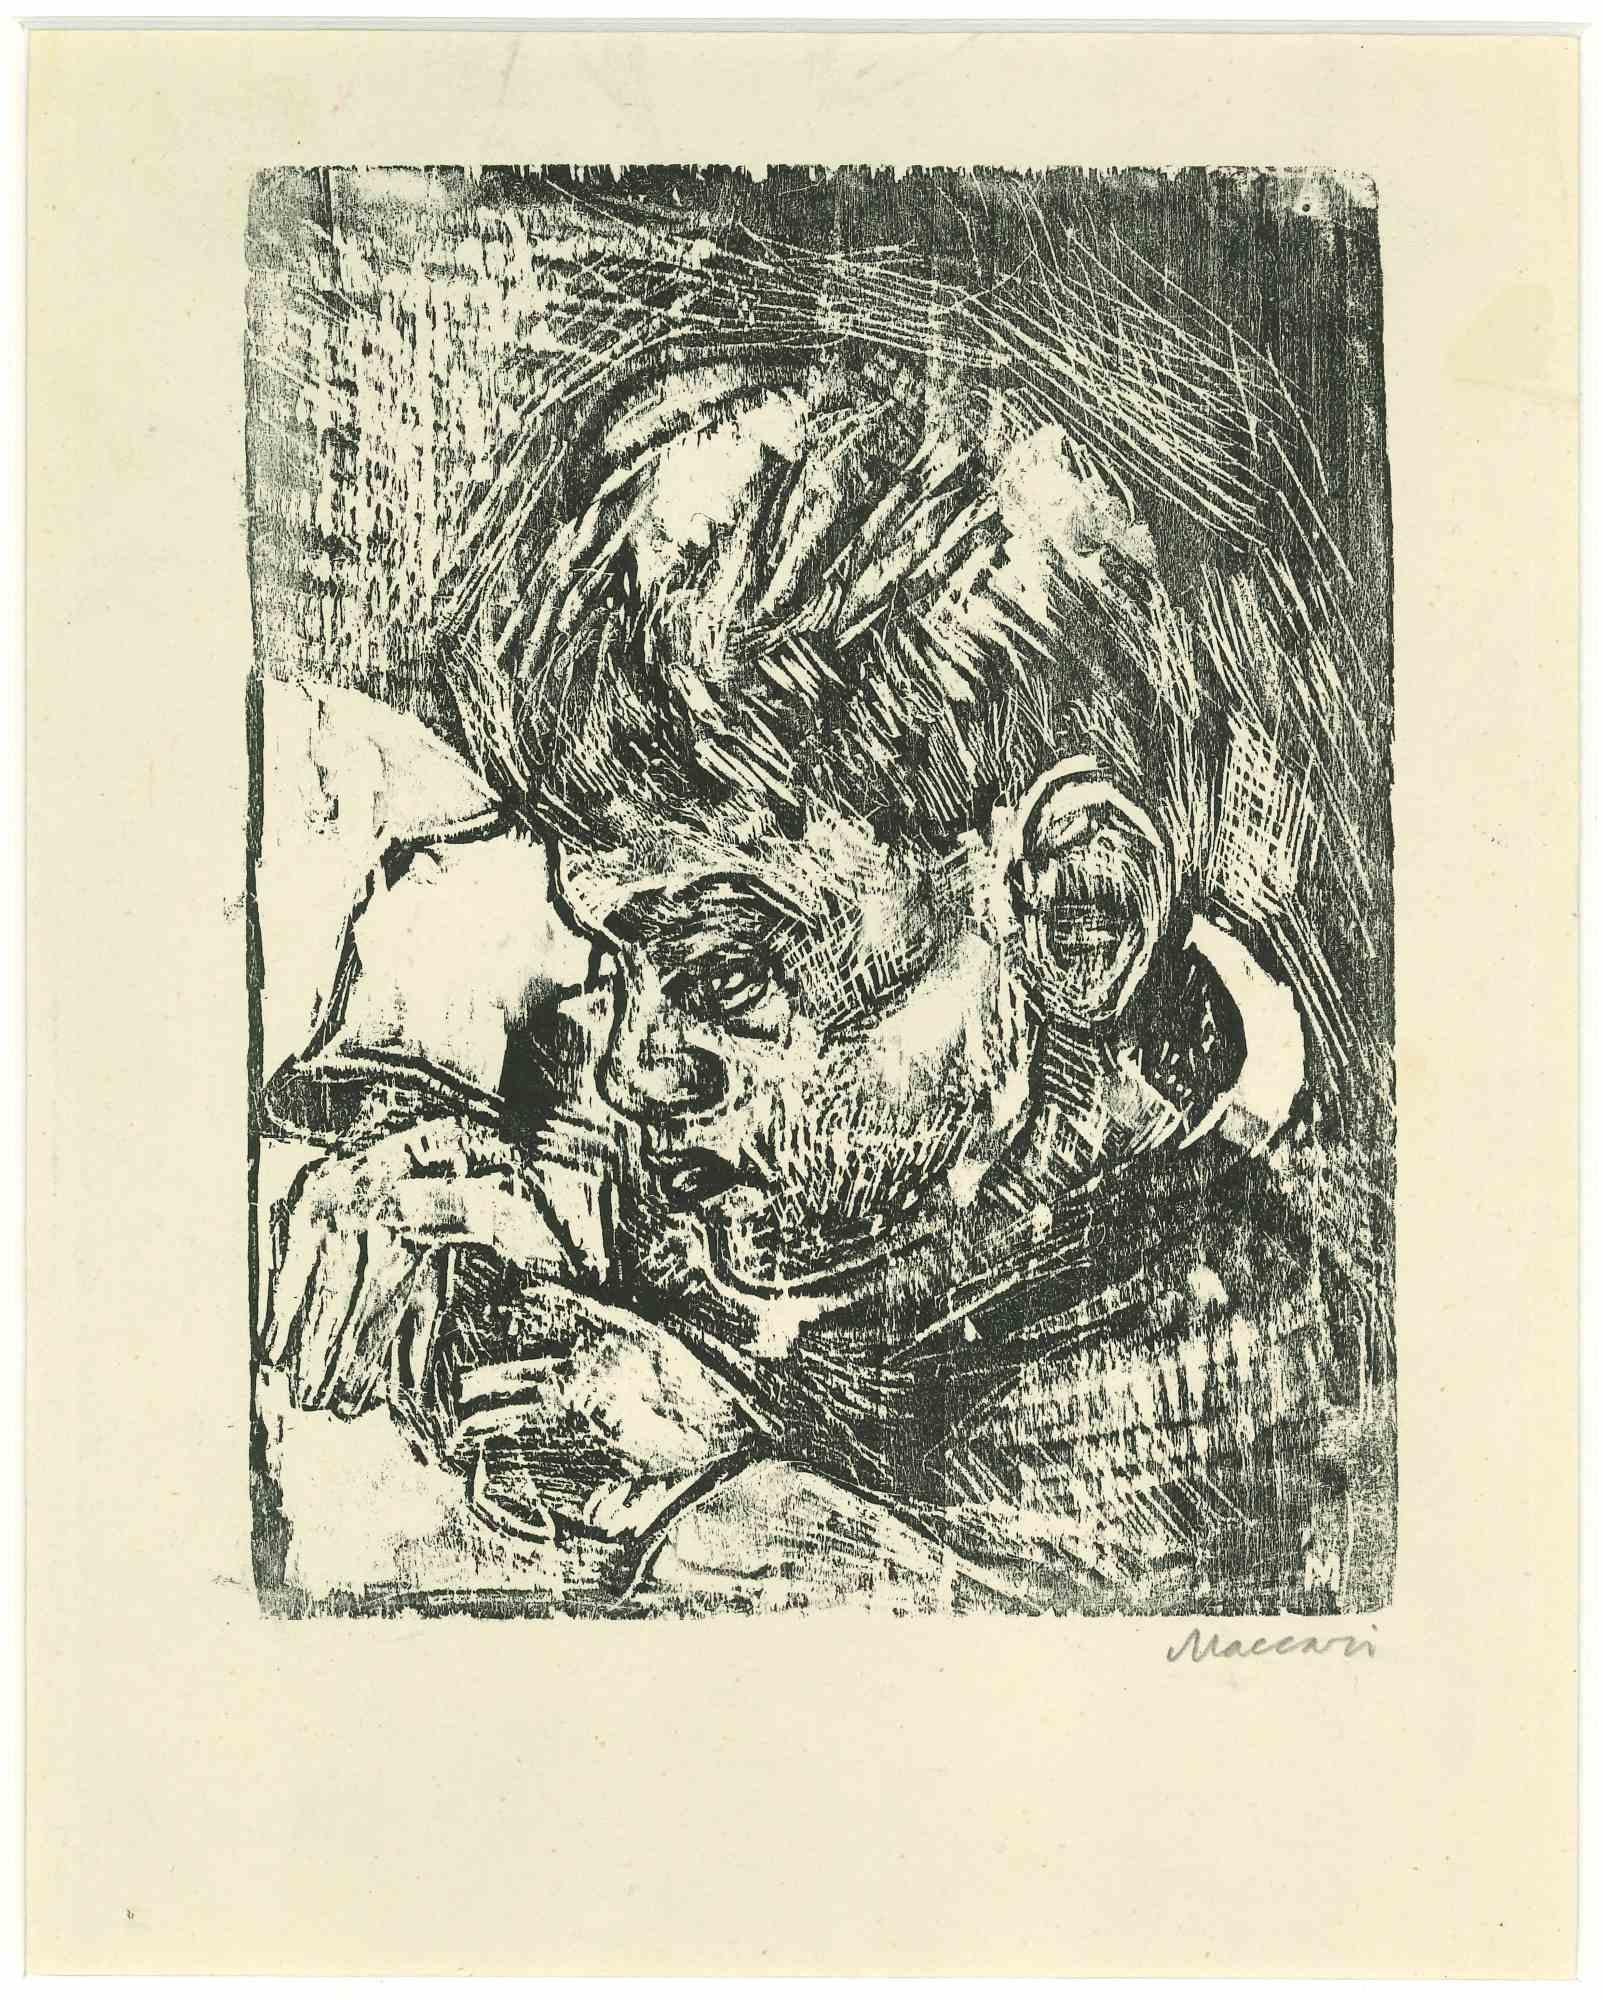 Portrait d'un enfant est une gravure sur bois originale réalisée par Mino Maccari au milieu du 20e siècle.

Bon état sur un papier jauni, inclus un passe-partout en carton blanc (35x28 cm).

Signé à la main par l'artiste au crayon.

Mino Maccari